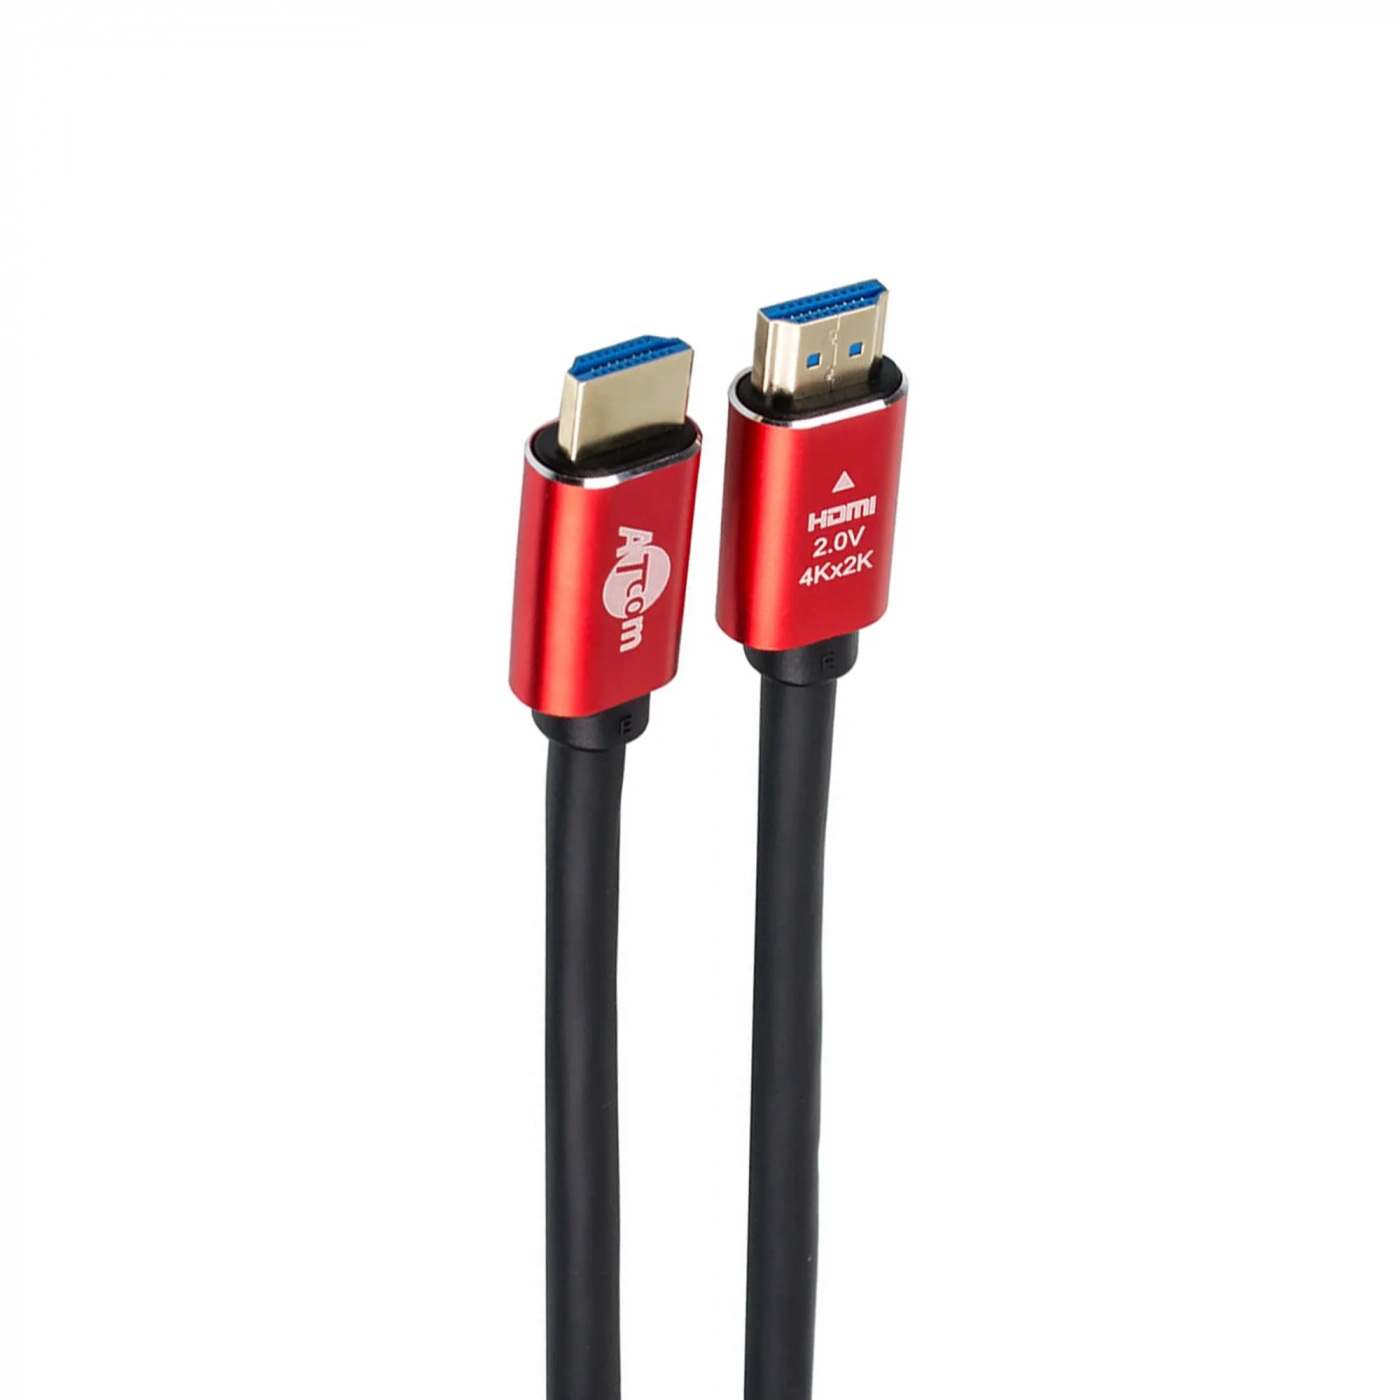 Купить Кабель ATcom HDMI-HDMI Red/Gold, пакет, 5м, 4К, VER 2.0 - фото 1